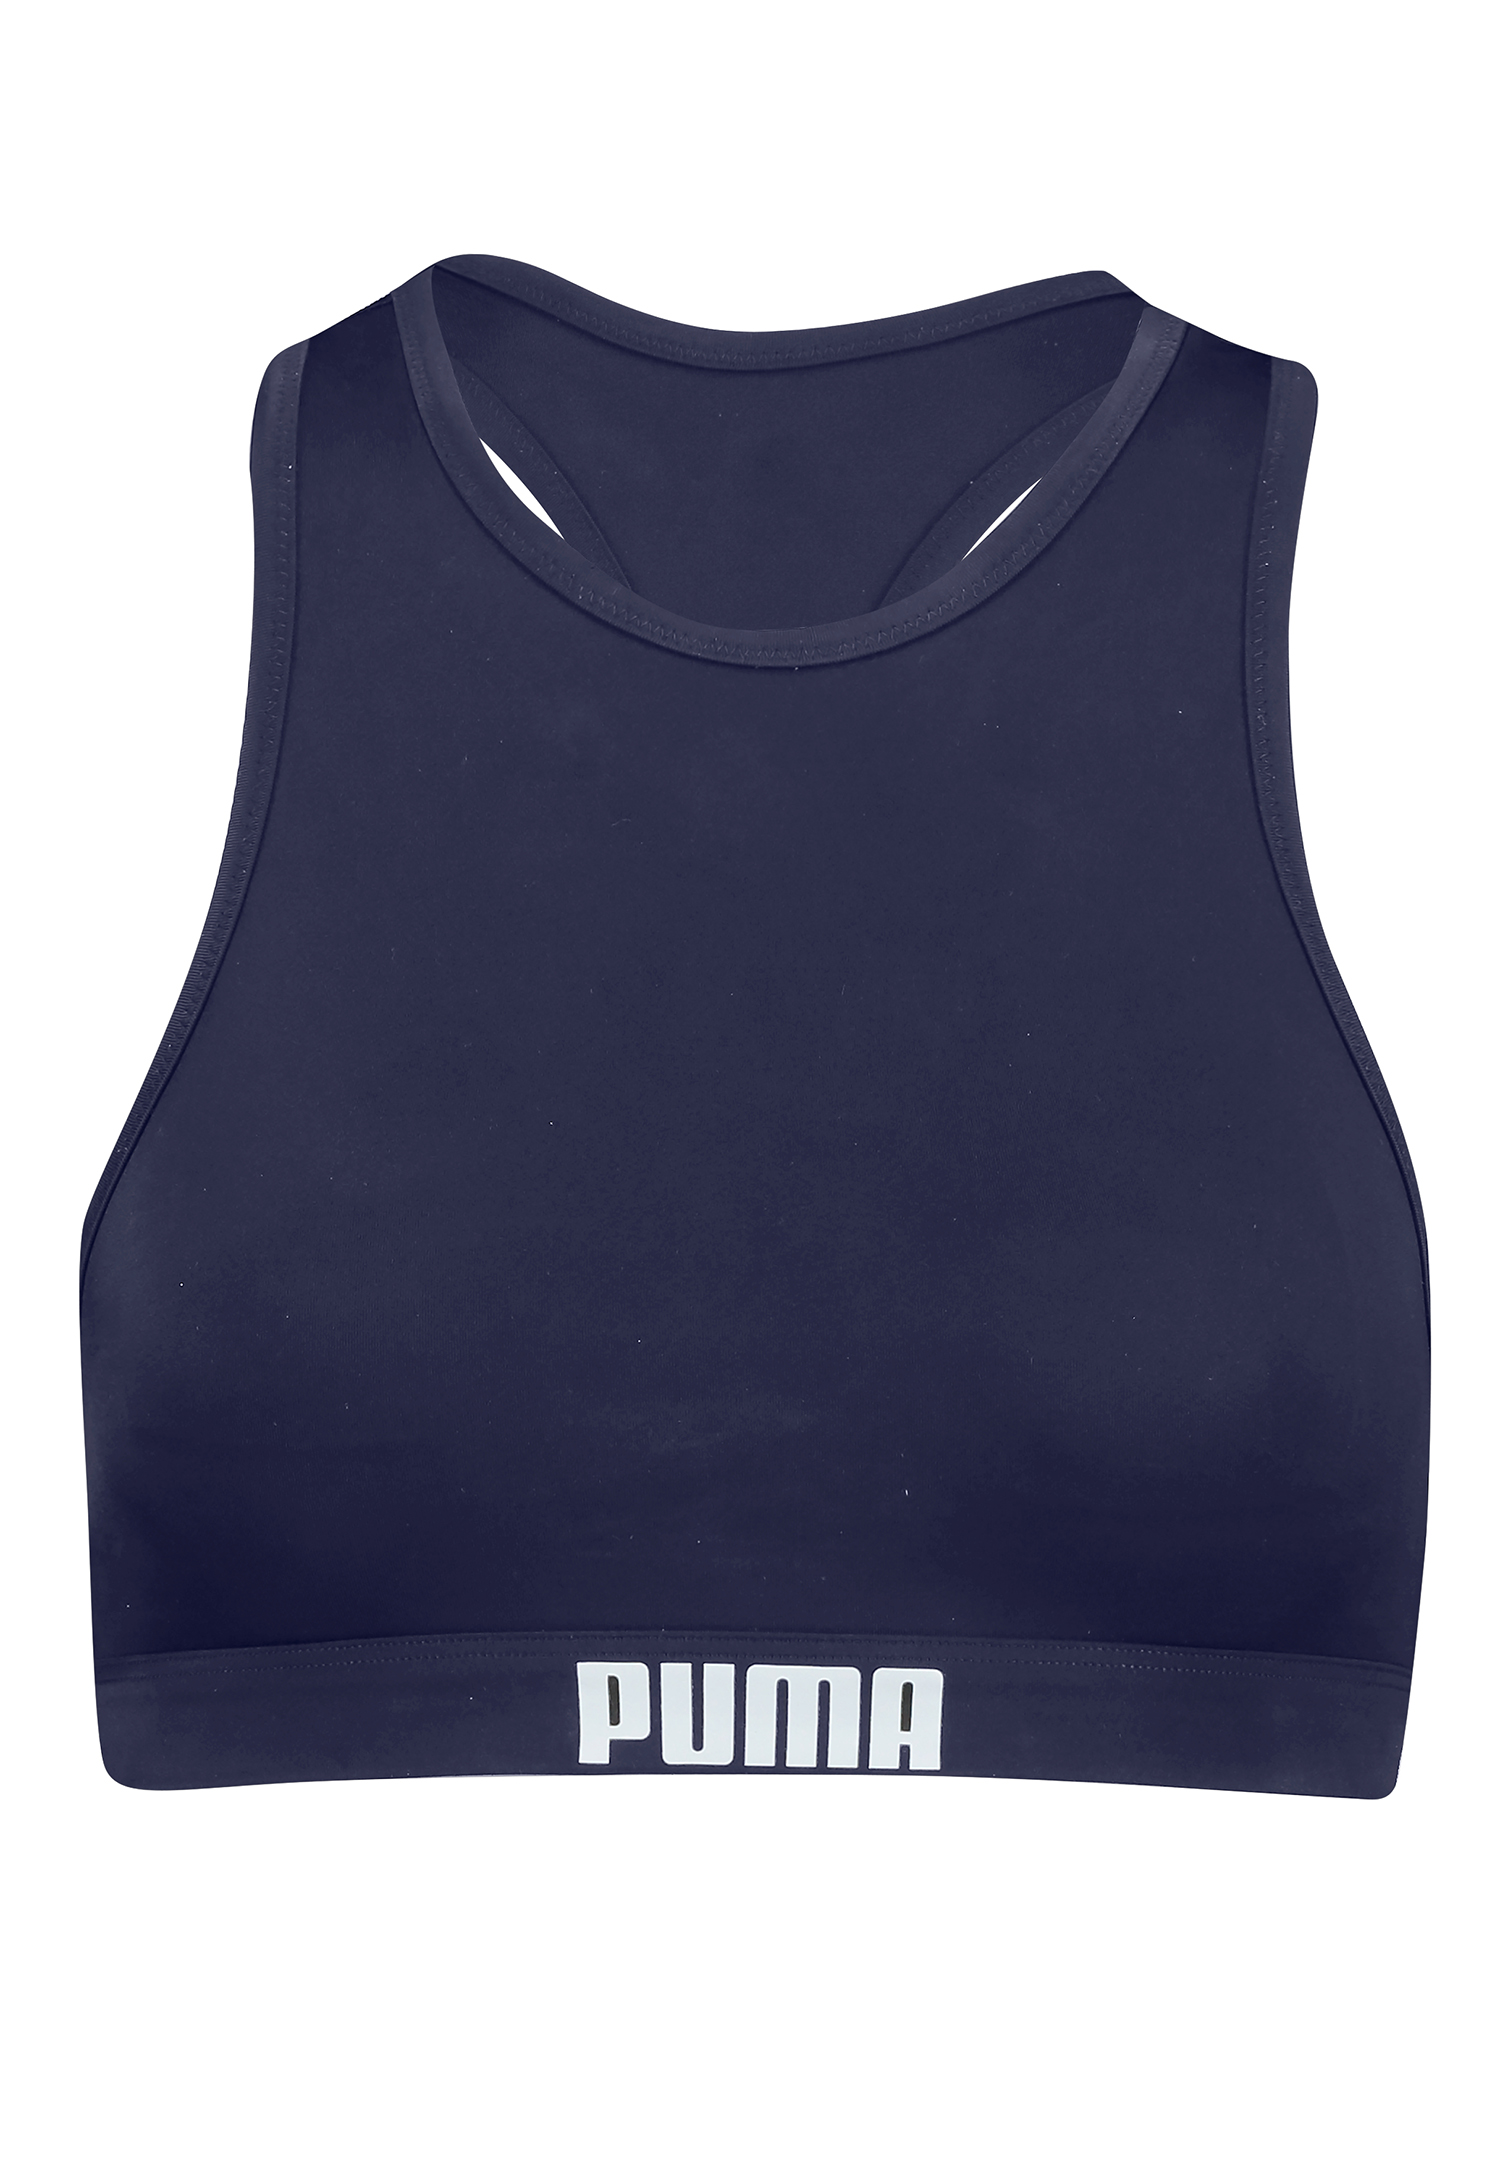 Купальник Puma SWIM WOMEN RACERBACK TOP, темно синий фото